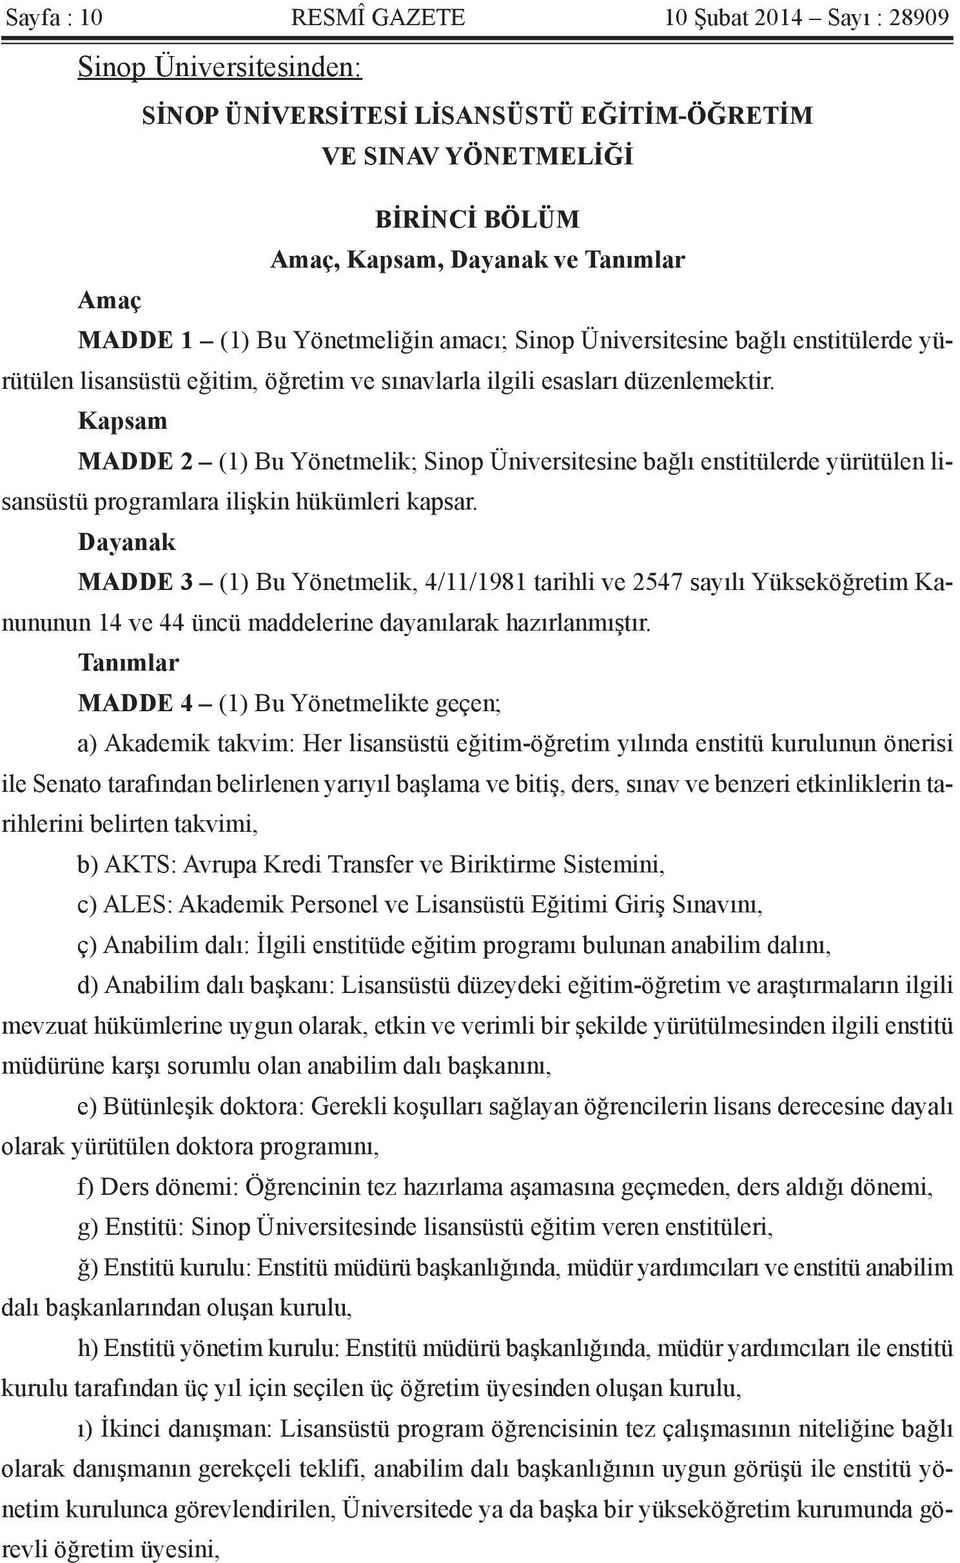 Kapsam MADDE 2 (1) Bu Yönetmelik; Sinop Üniversitesine bağlı enstitülerde yürütülen lisansüstü programlara ilişkin hükümleri kapsar.